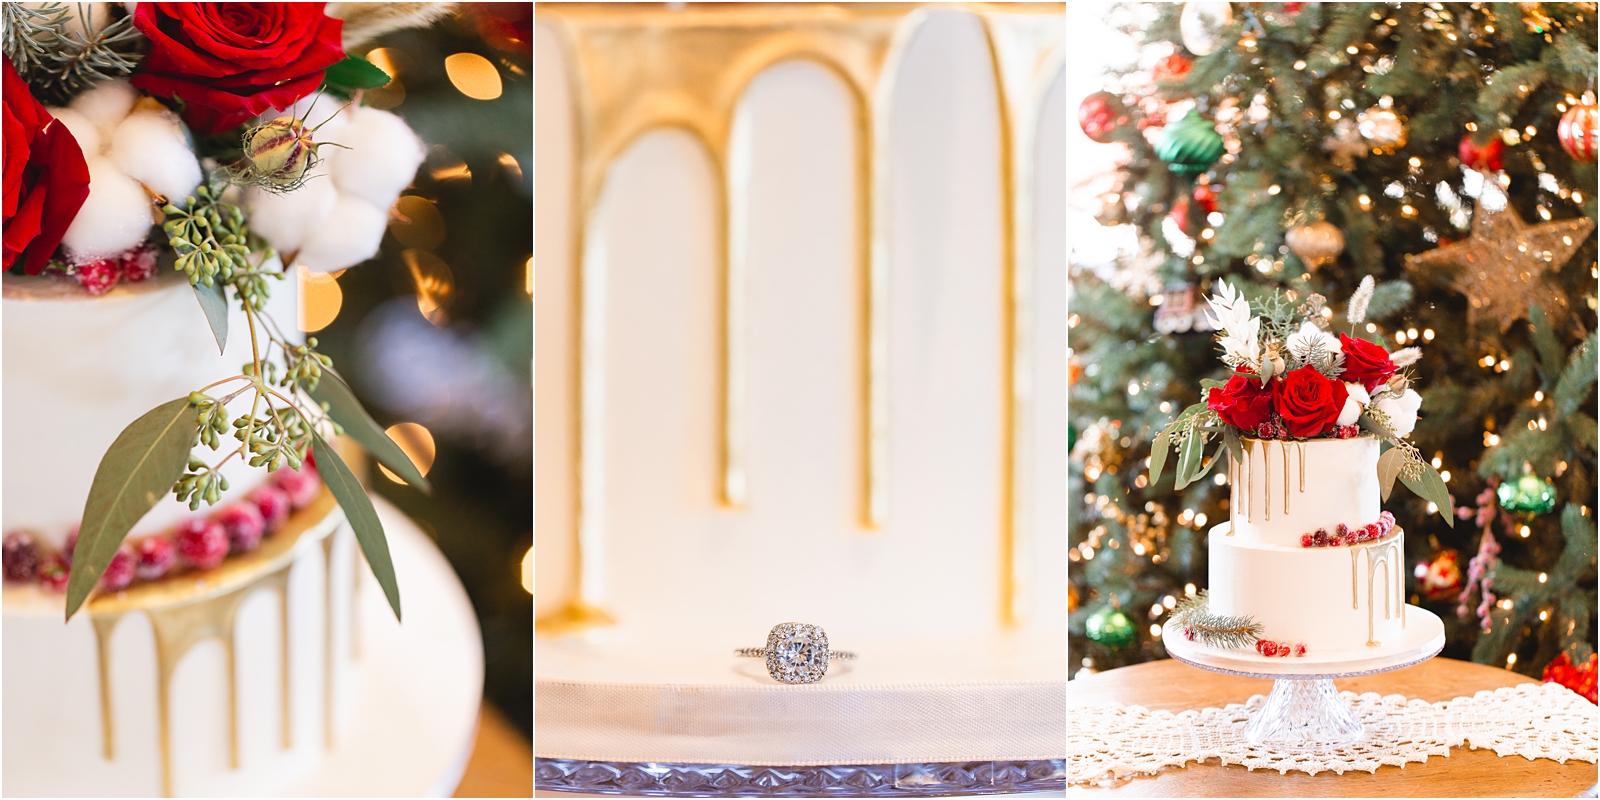 Gold drip wedding cake and Christmas tree